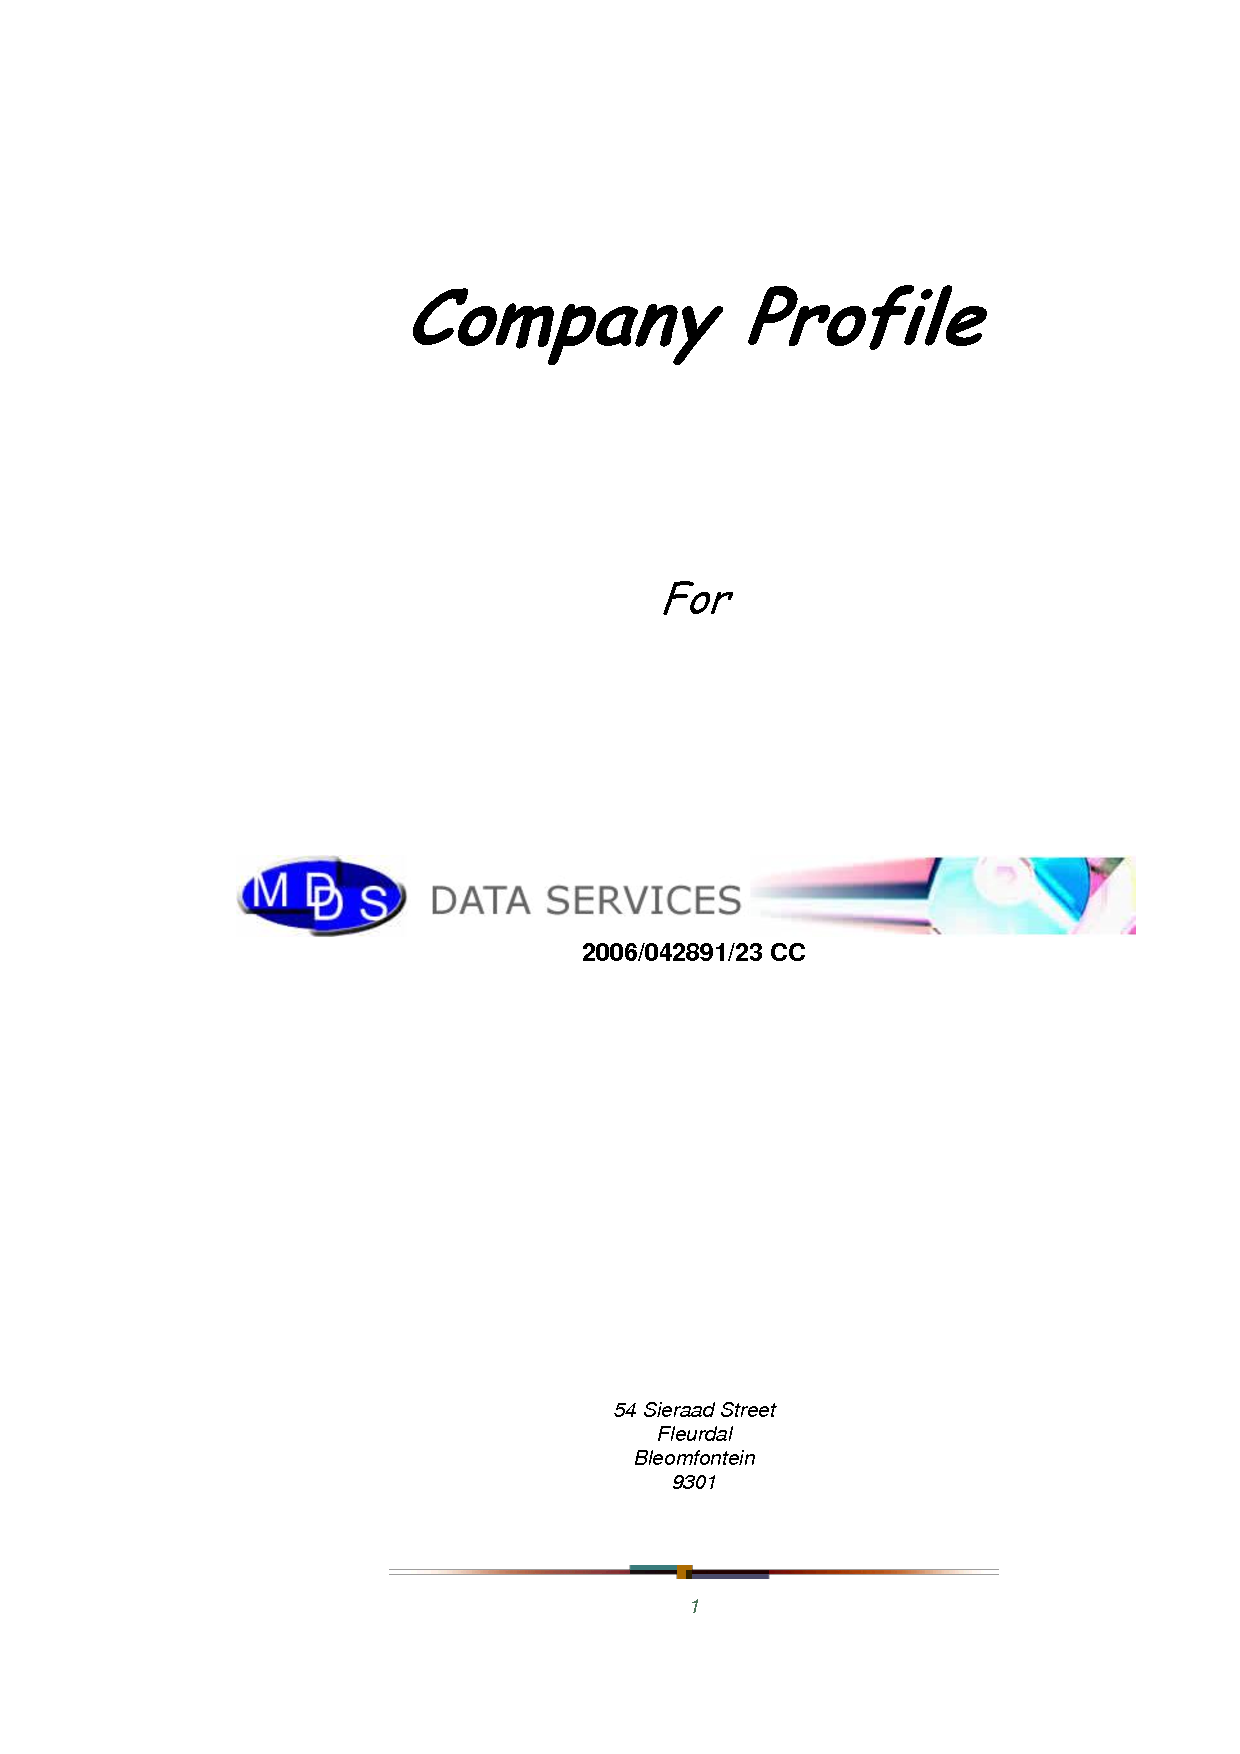 Graphic Design Company Profile Sample